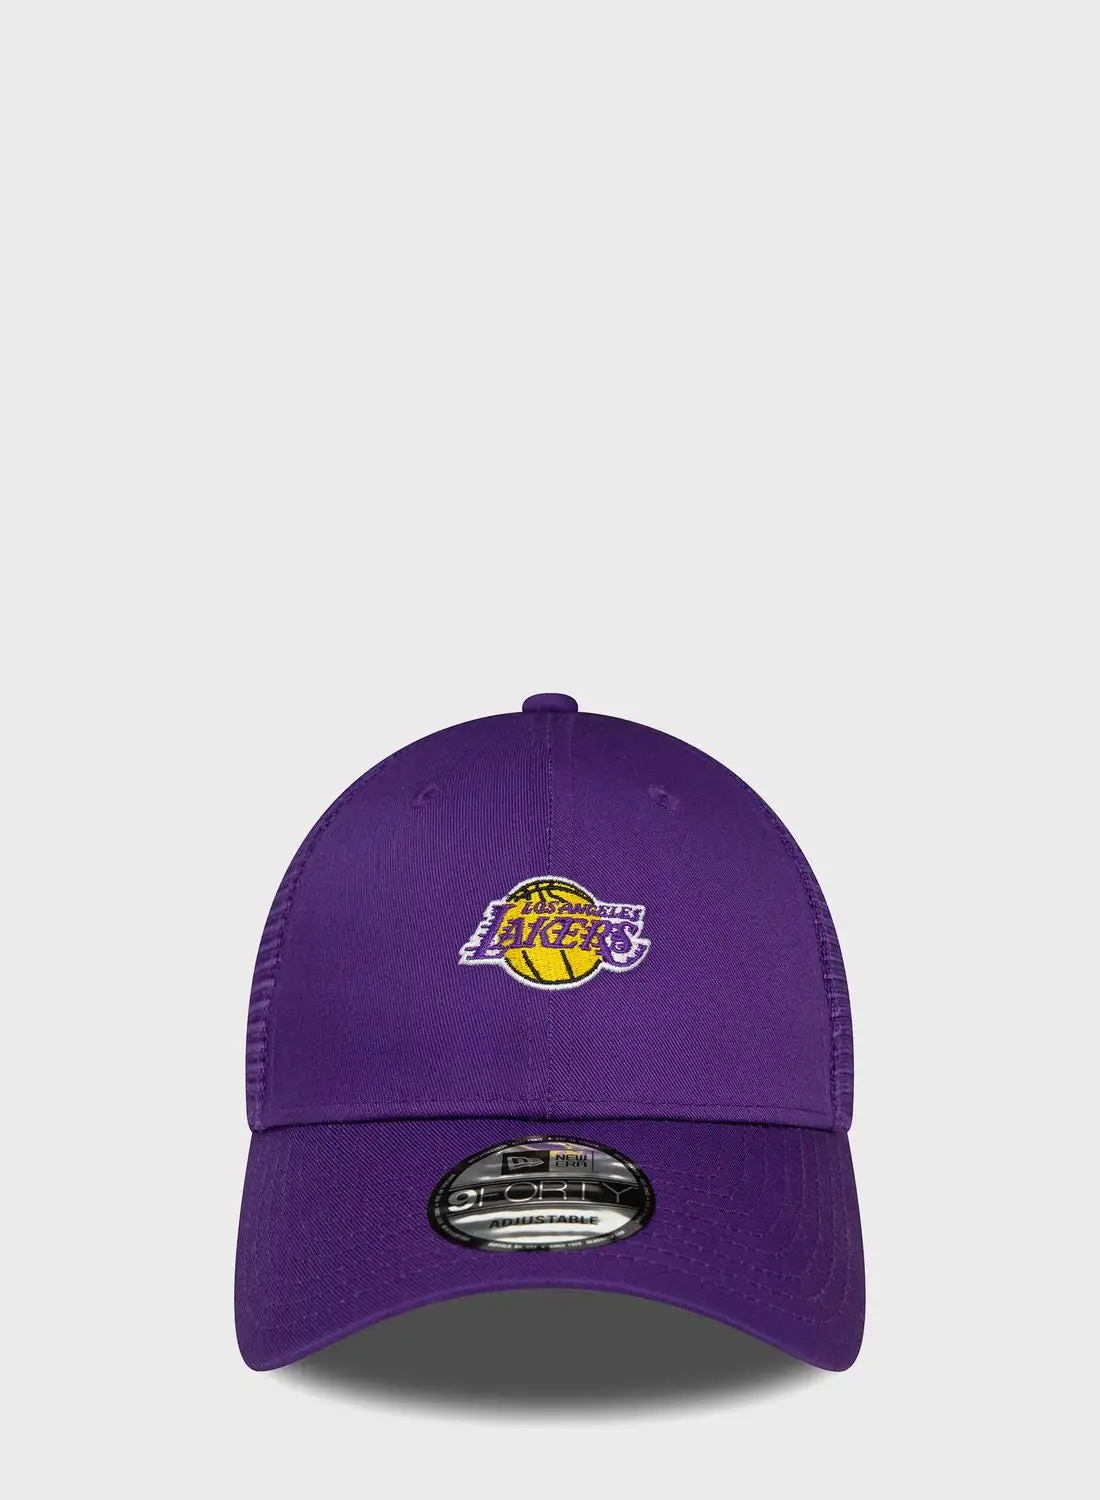 قبعة لوس أنجلوس ليكرز الجديدة